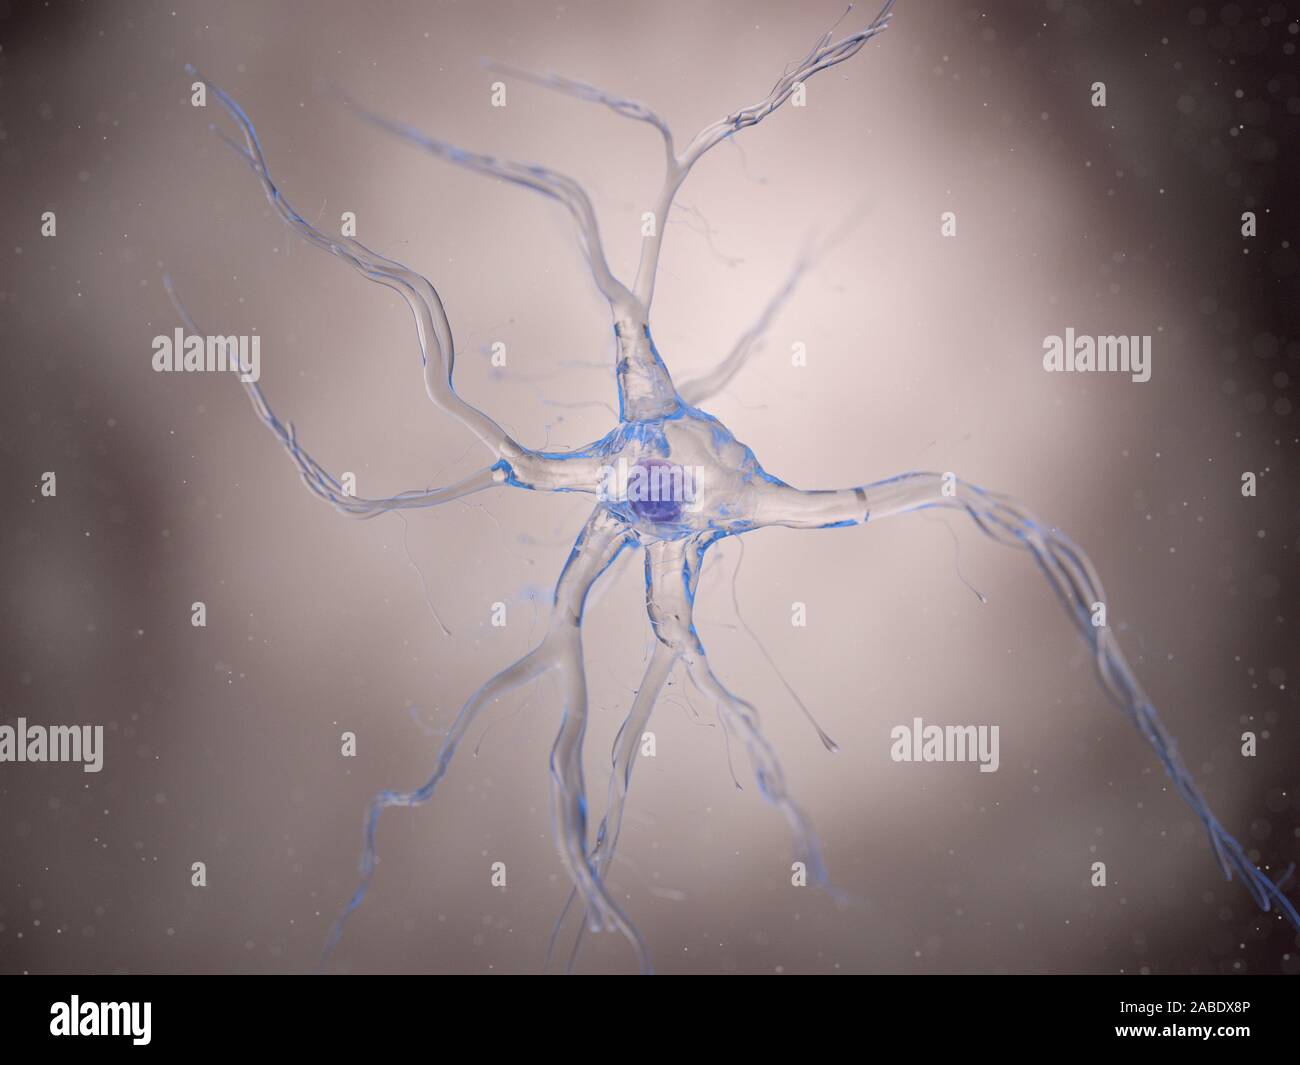 Rendu 3d illustration d'une cellule nerveuse Banque D'Images